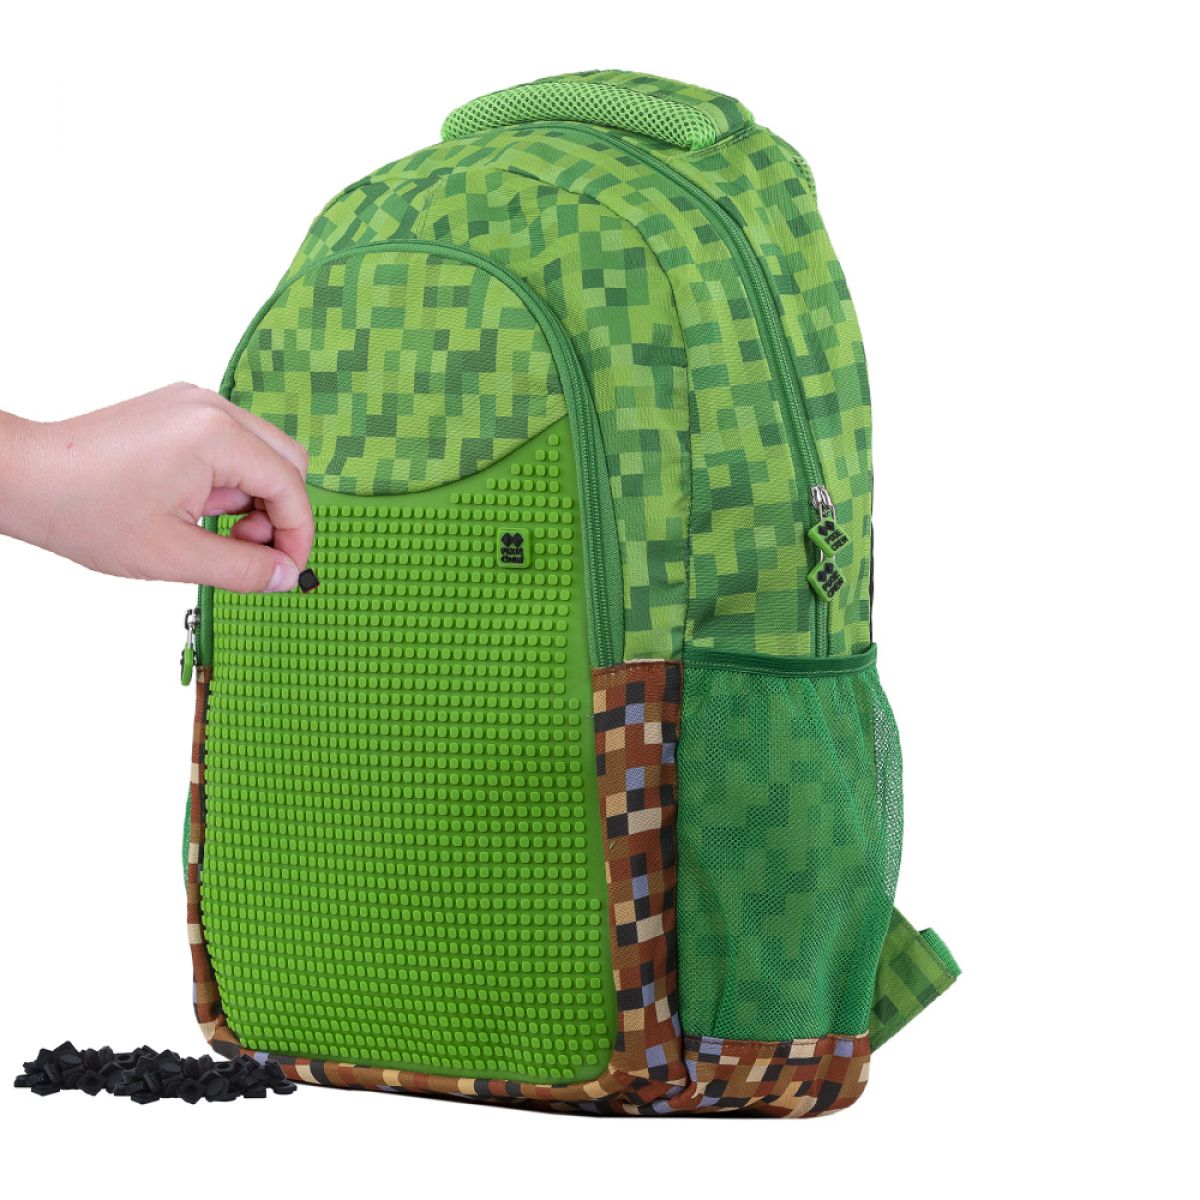 Pixie Crew Kreativní studentský batoh Minecraft zeleno-hnědý